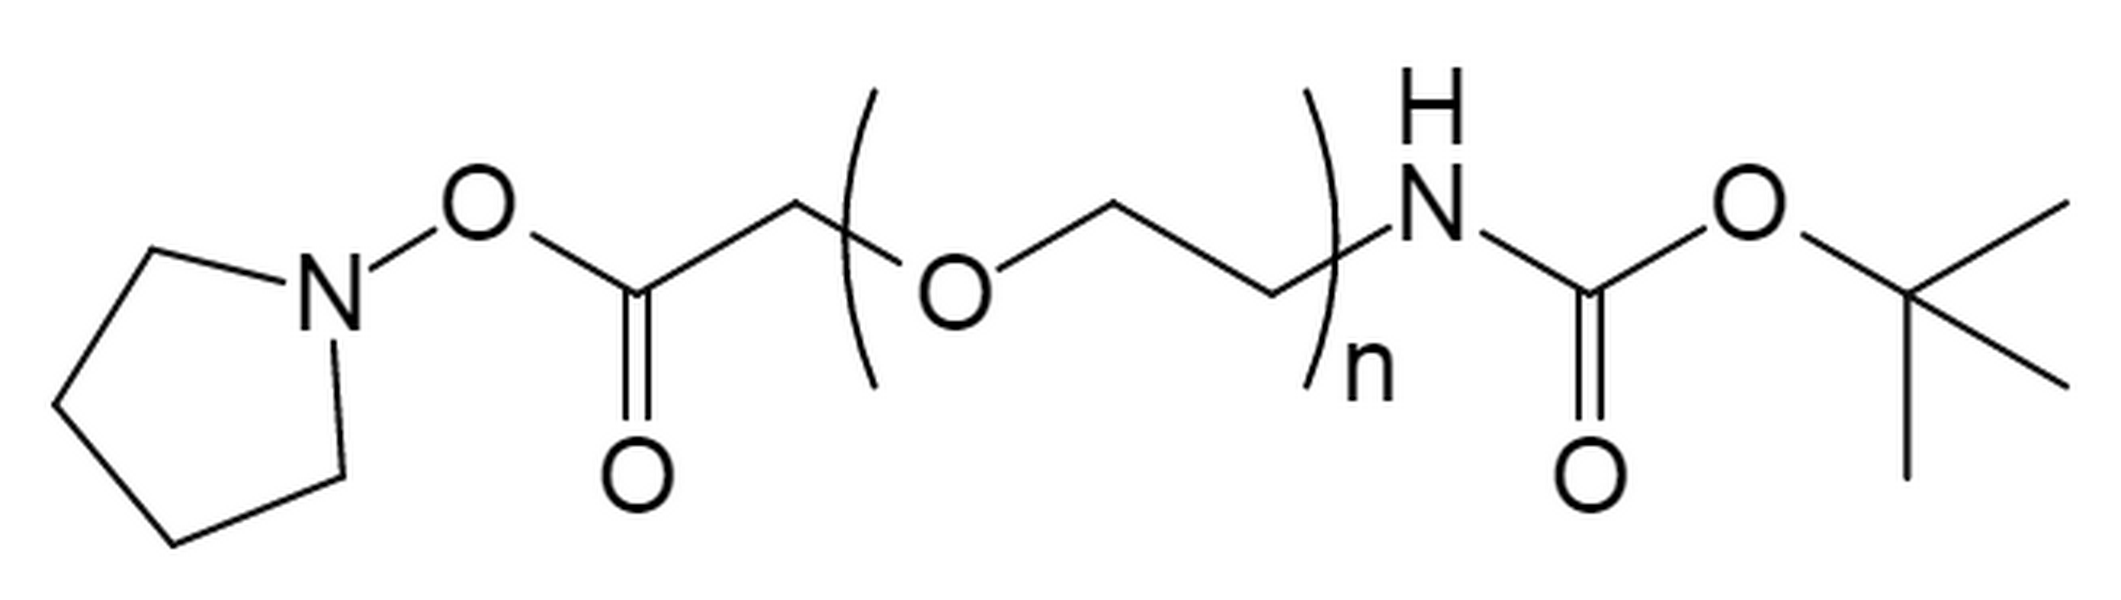 t-Boc Amine PEG Succinimidyl Carboxymethyl Ester,MW 5K